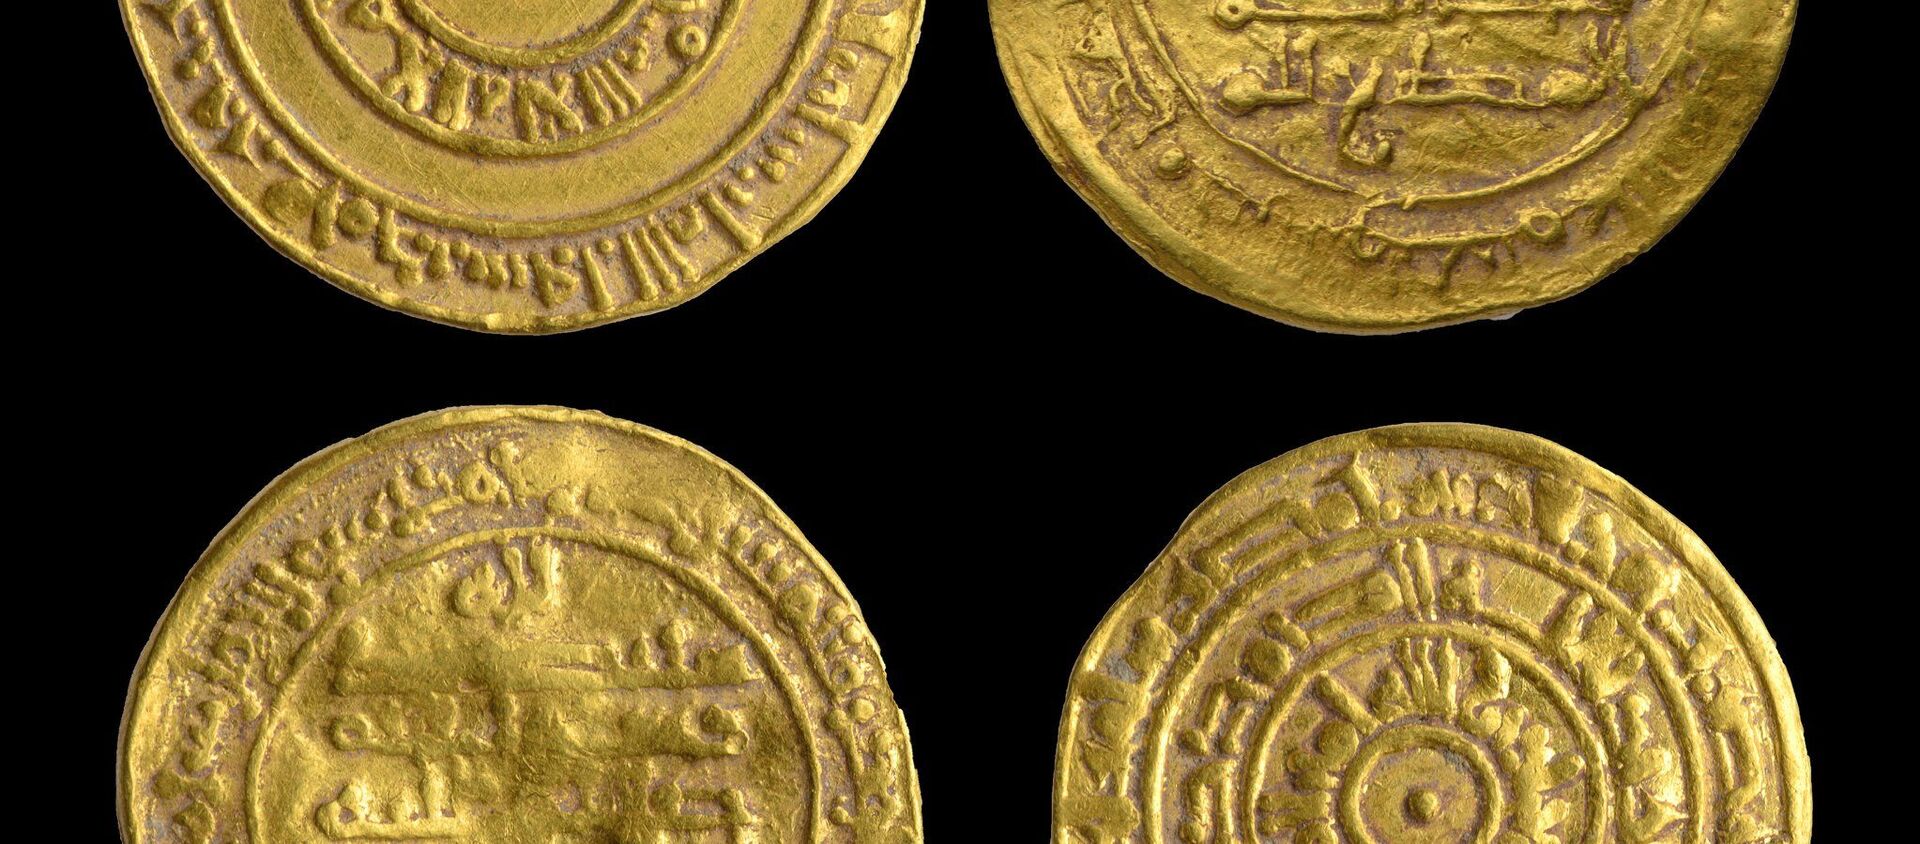 Monedas de oro milenarias halladas en una jarra de cerámica cerca del Muro de las Lamentaciones, en Jerusalén - Sputnik Mundo, 1920, 10.11.2020